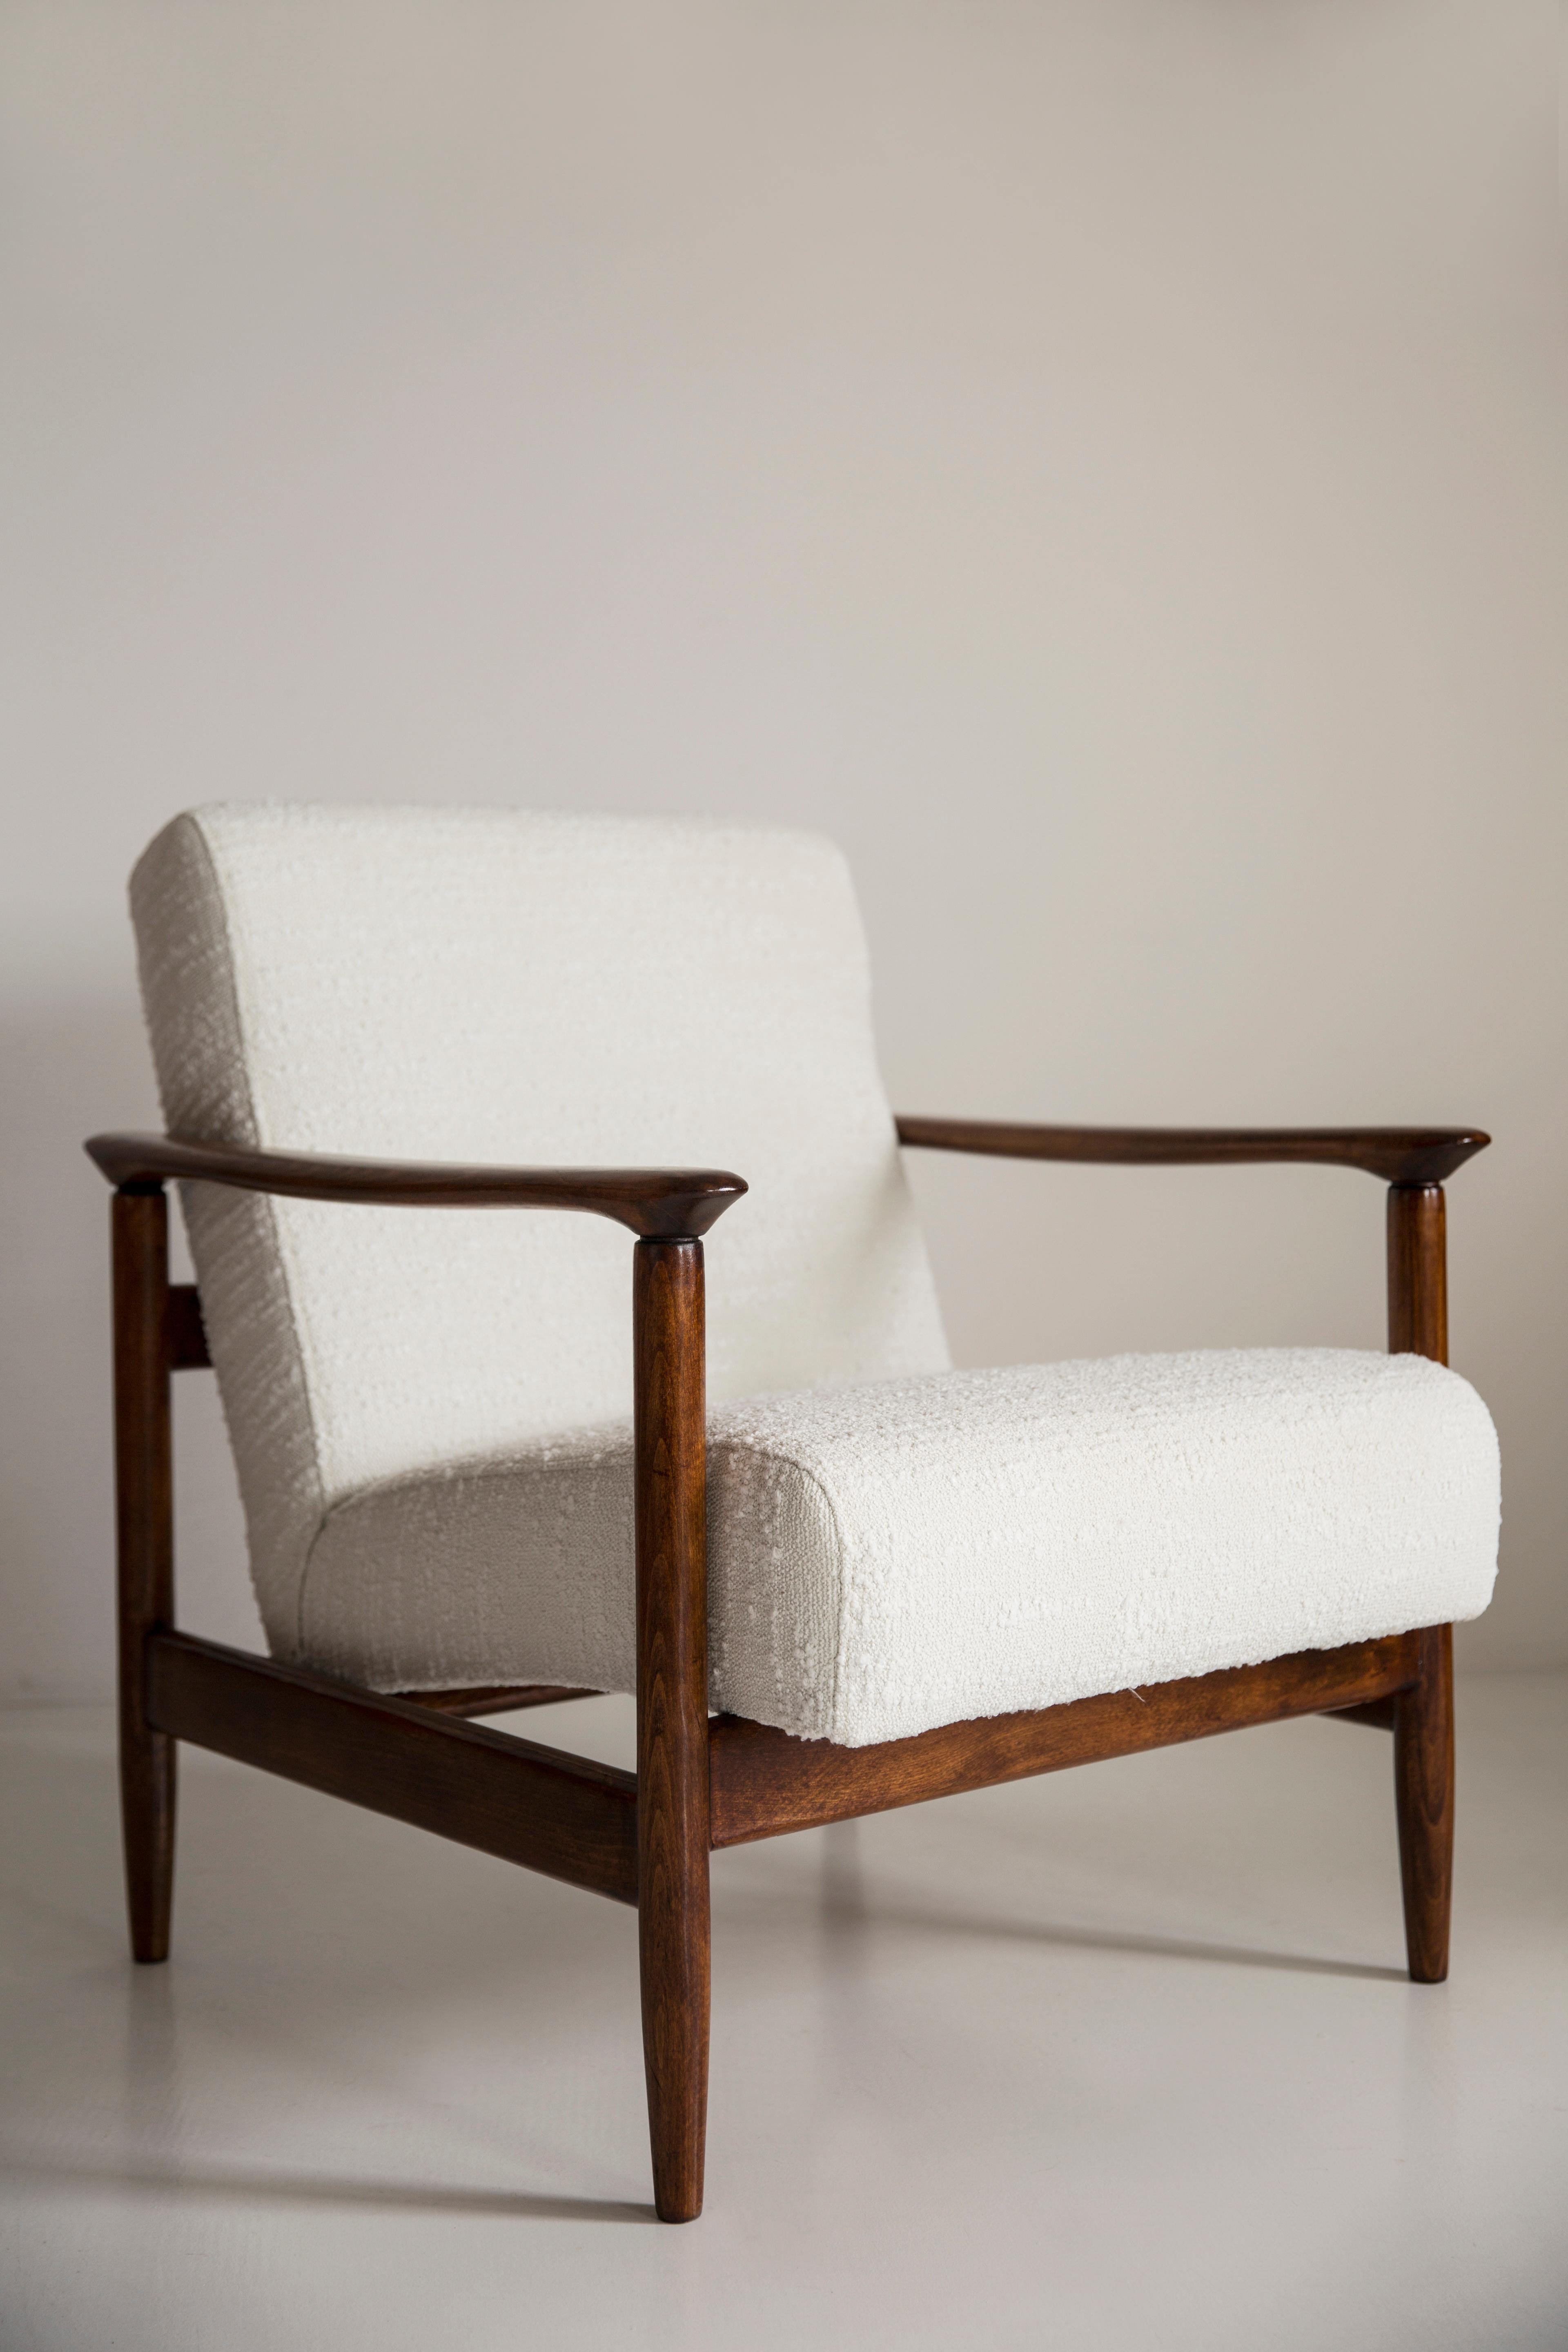 Schöner weißer Boule-Sessel GFM-142, entworfen von Edmund Homa, einem polnischen Architekten, Designer von Industriedesign und Innenarchitektur, Professor an der Akademie der Schönen Künste in Danzig. 

Der Sessel wurde in den 1960er Jahren in der